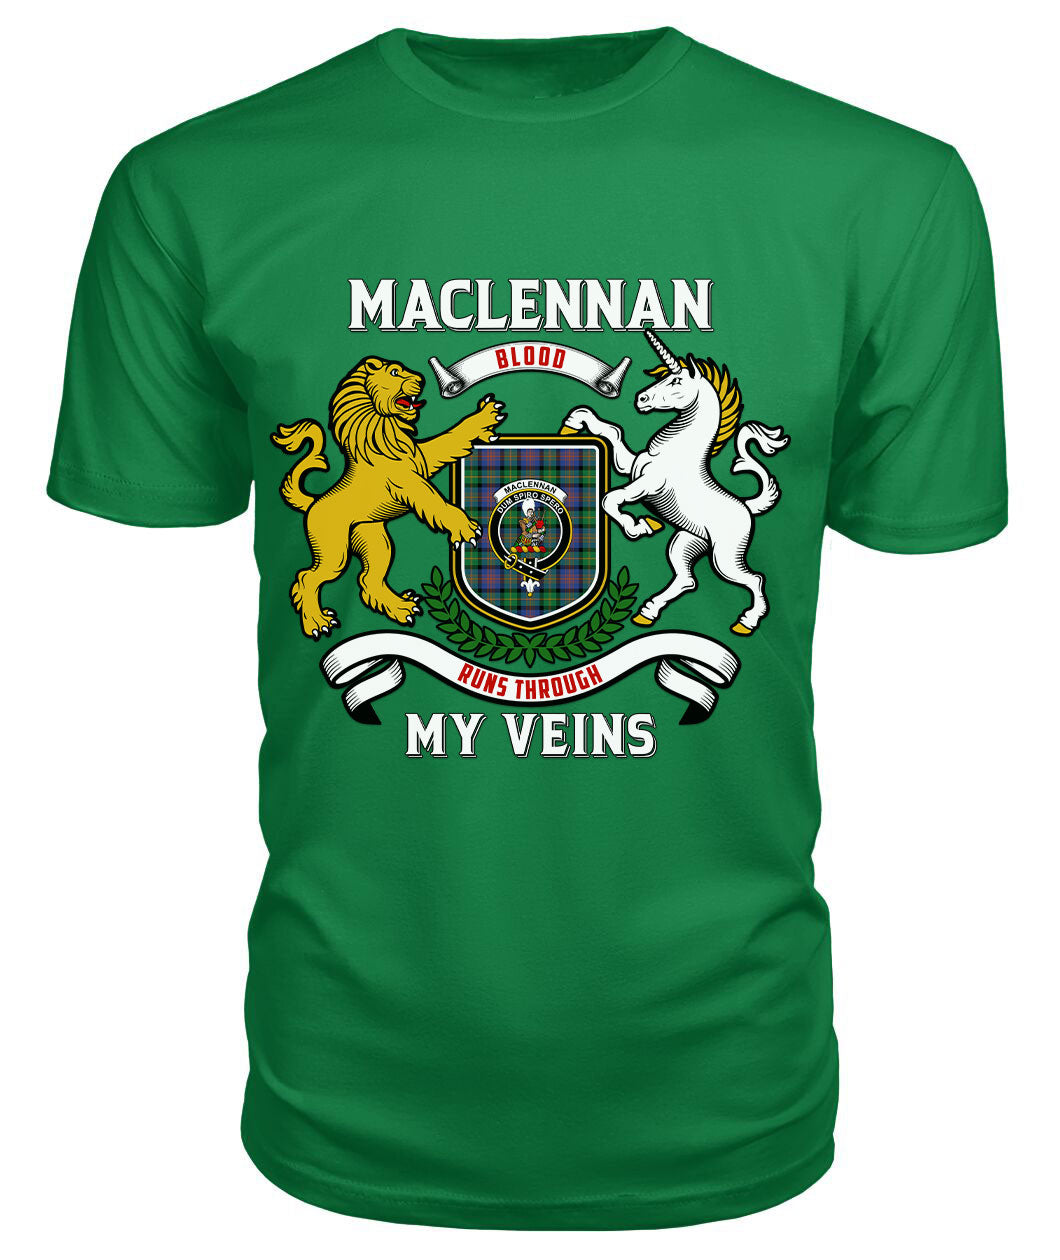 MacLennan Ancient Tartan Crest 2D T-shirt - Blood Runs Through My Veins Style